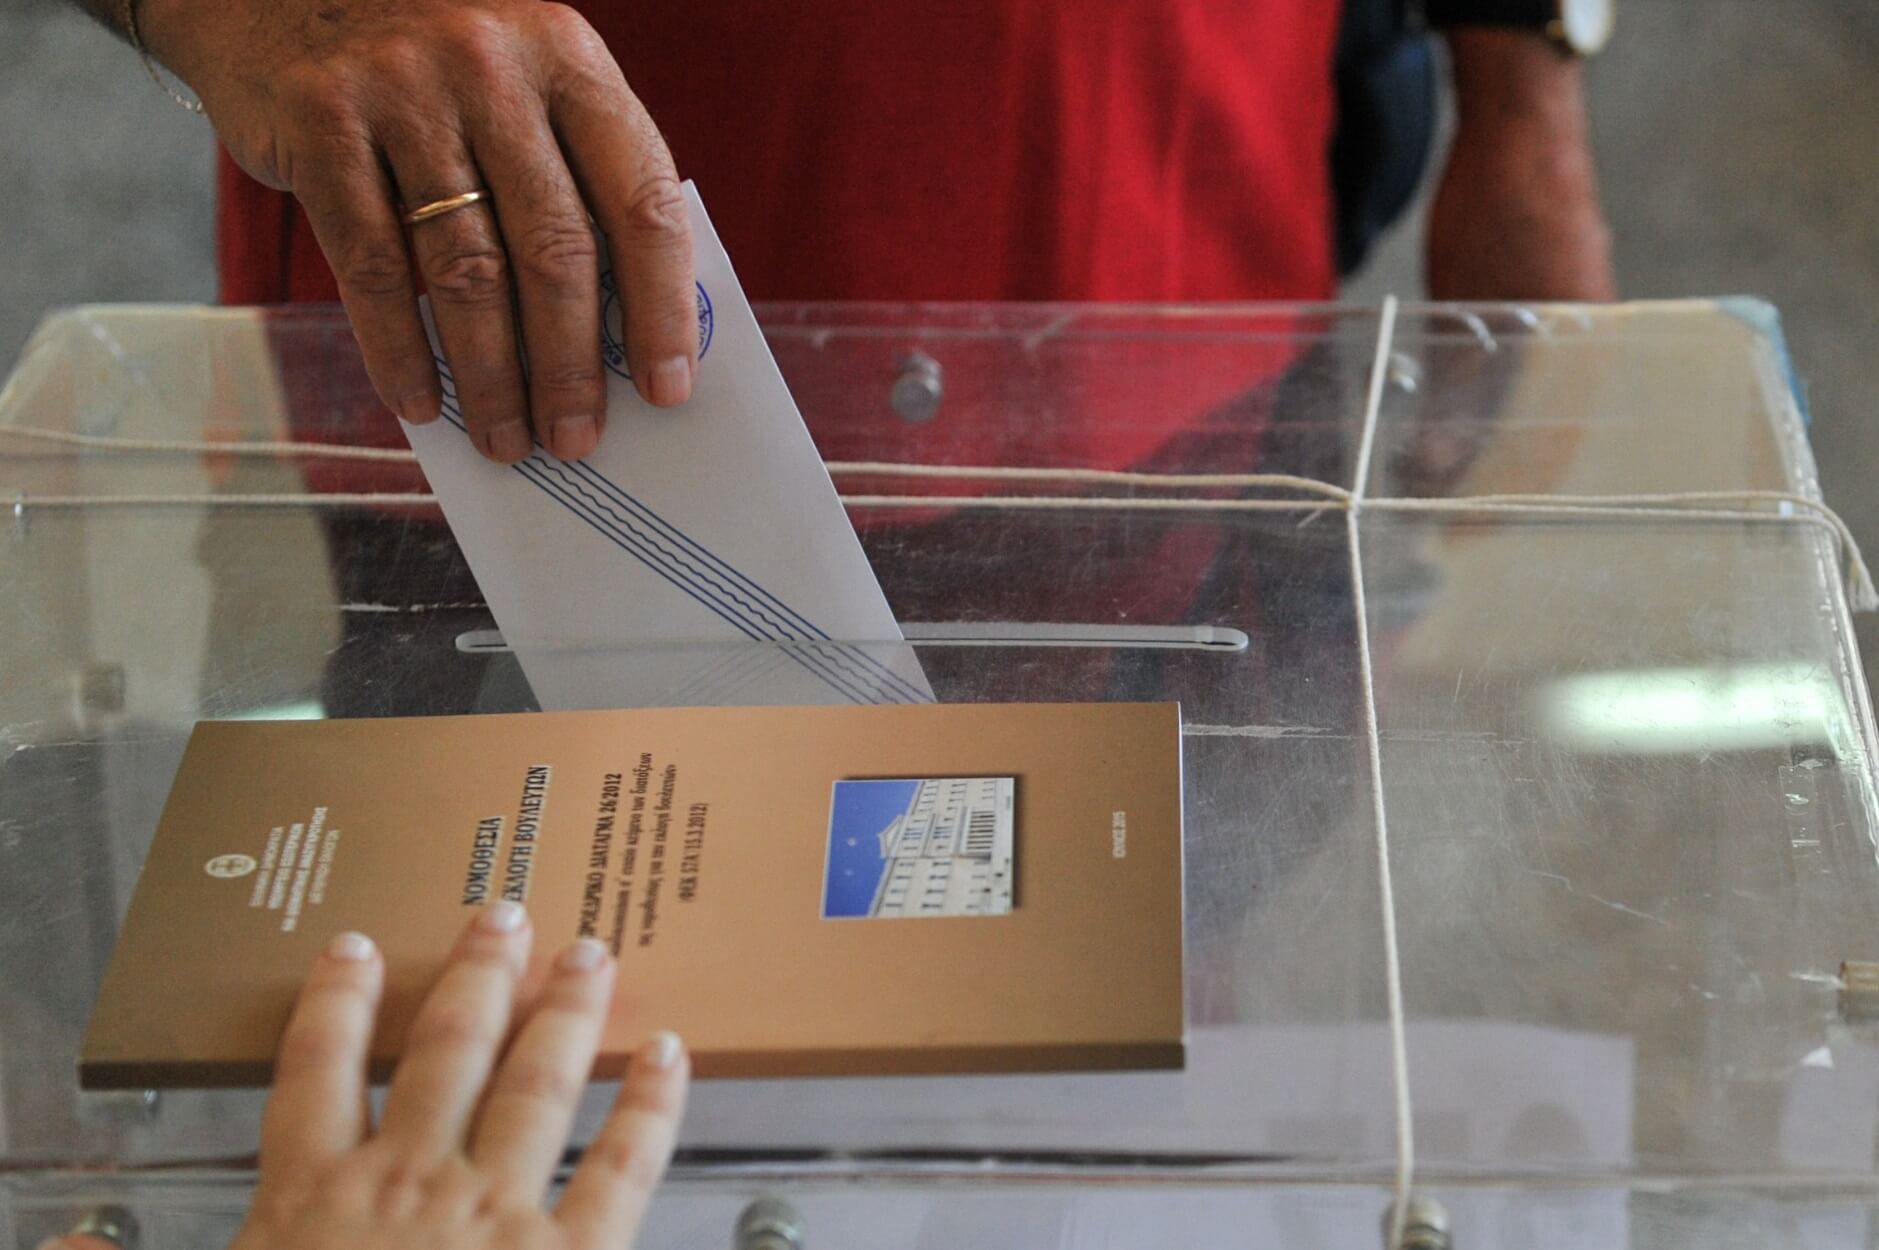 Εκλογές 2019: Πότε θα γίνουν οι Ευρωεκλογές, οι Δημοτικές και οι Περιφερειακές εκλογές